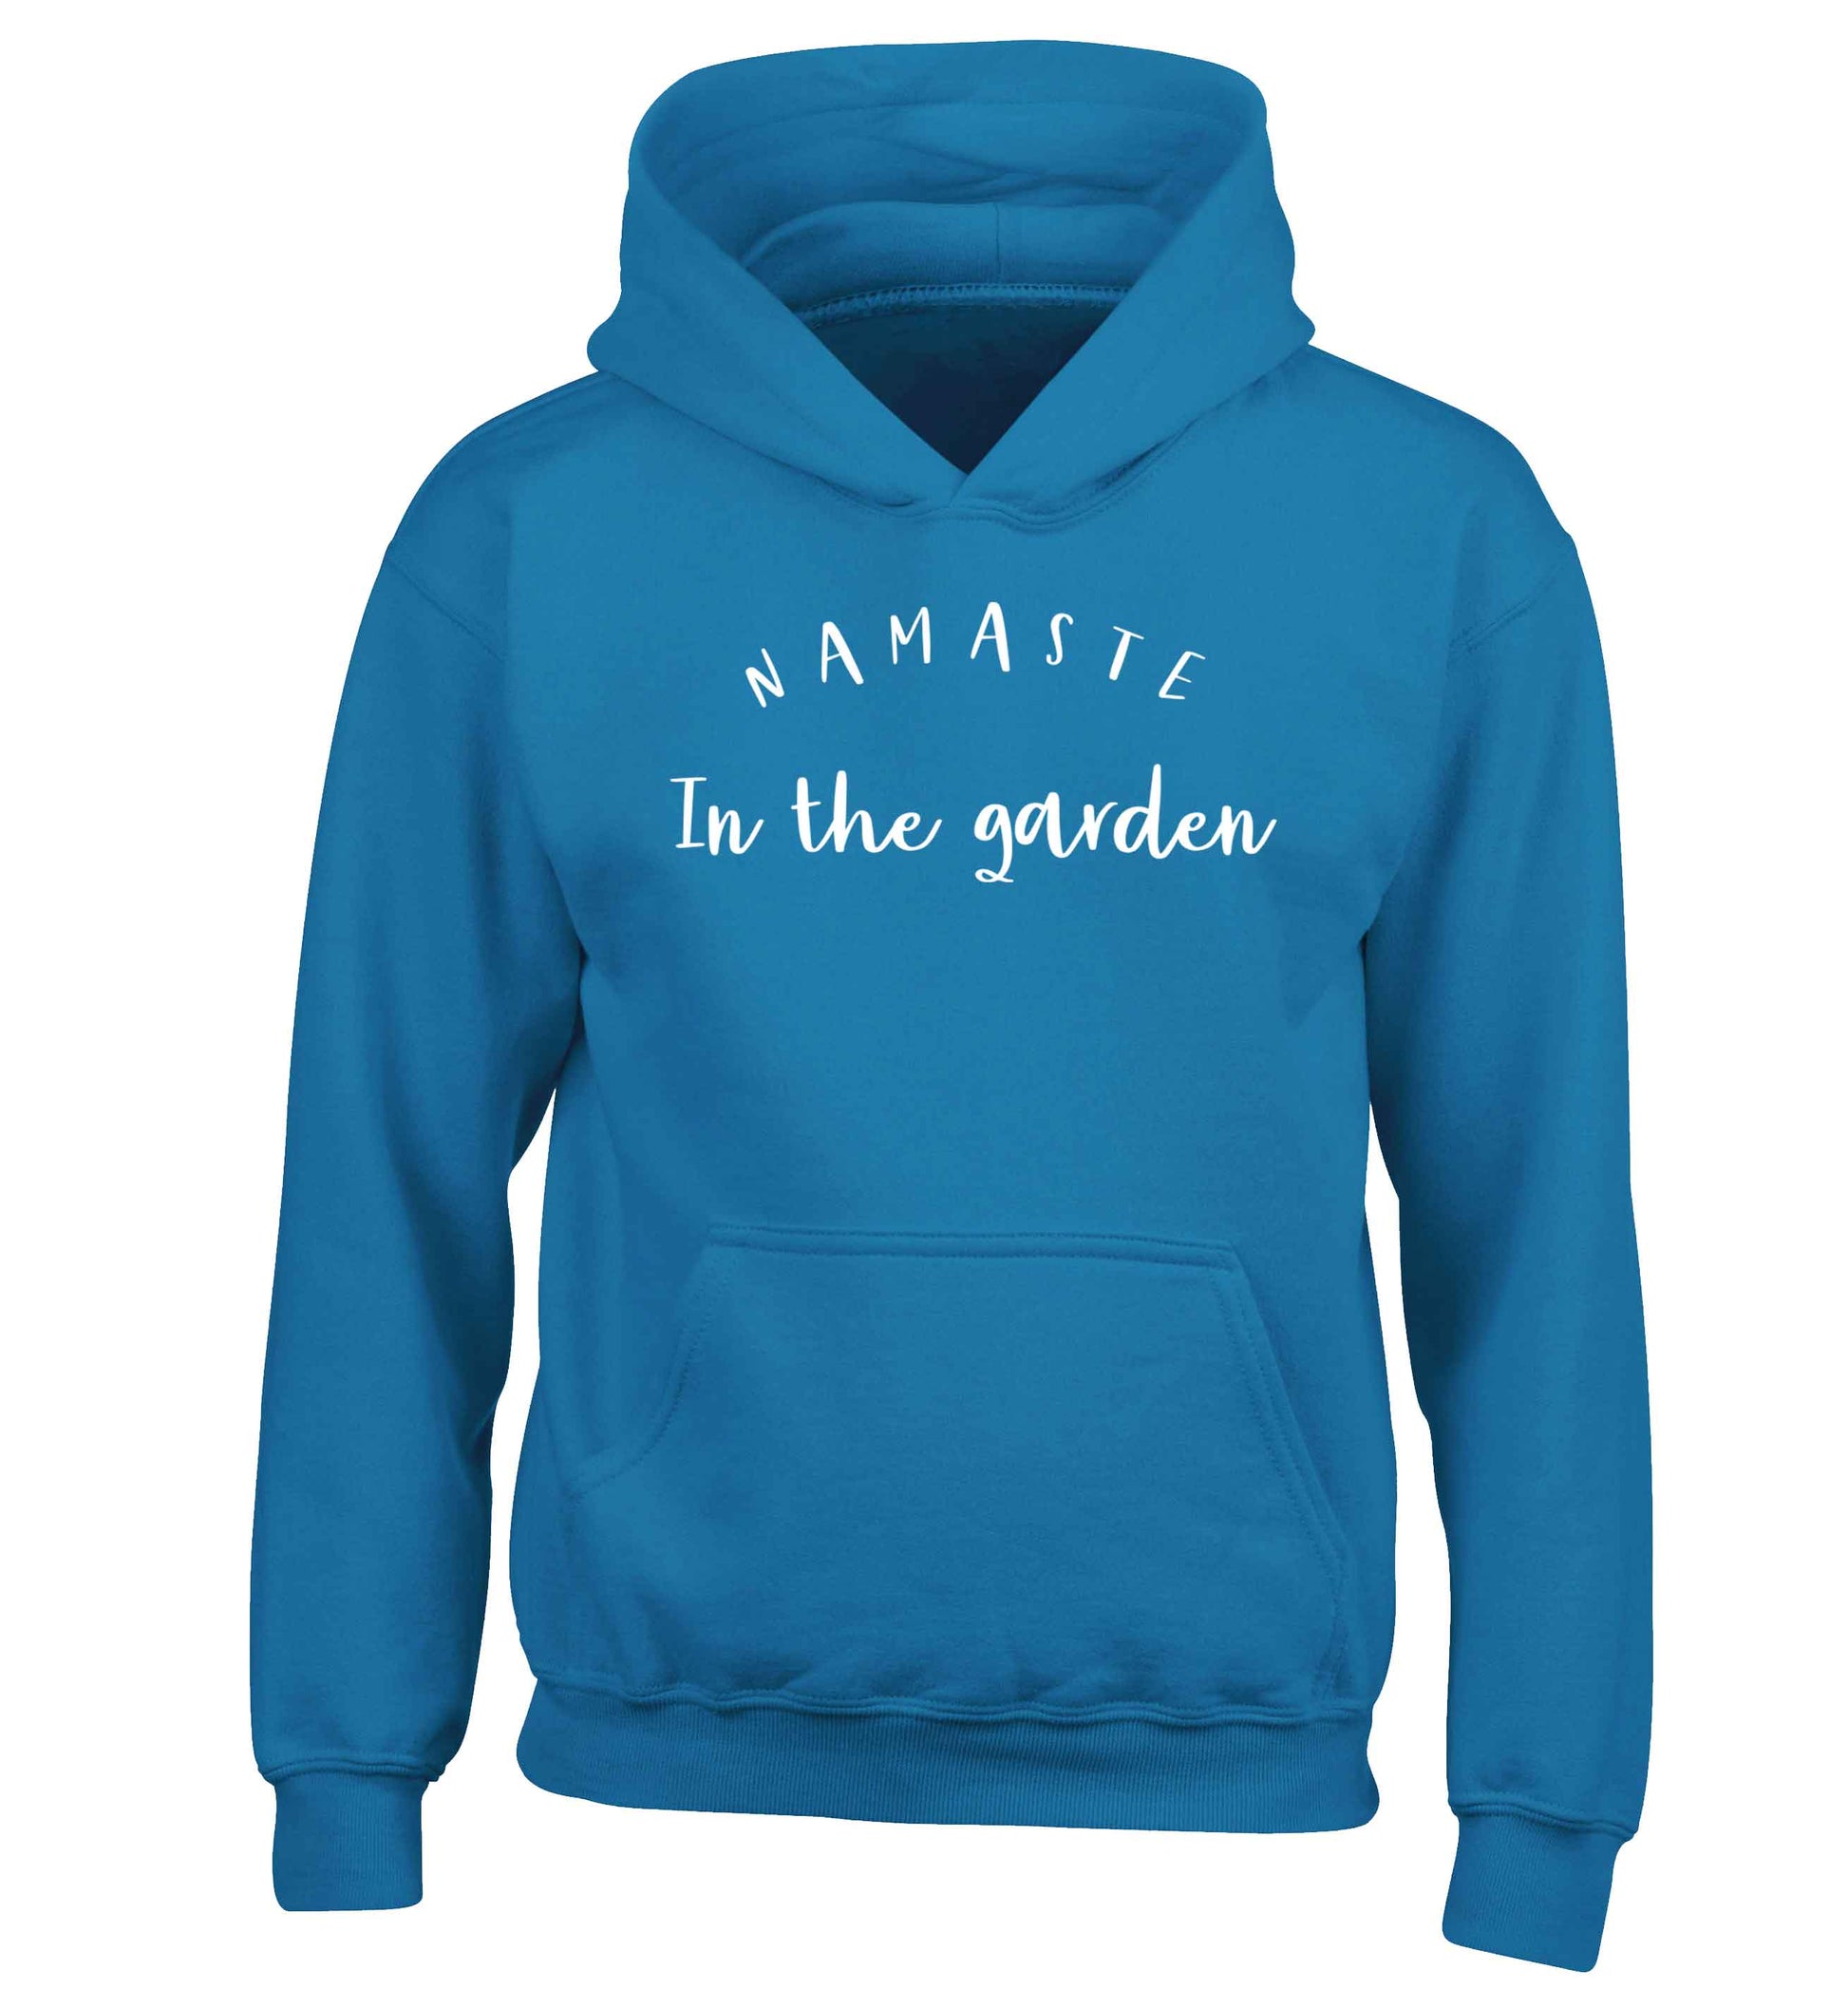 Namaste in the garden children's blue hoodie 12-13 Years